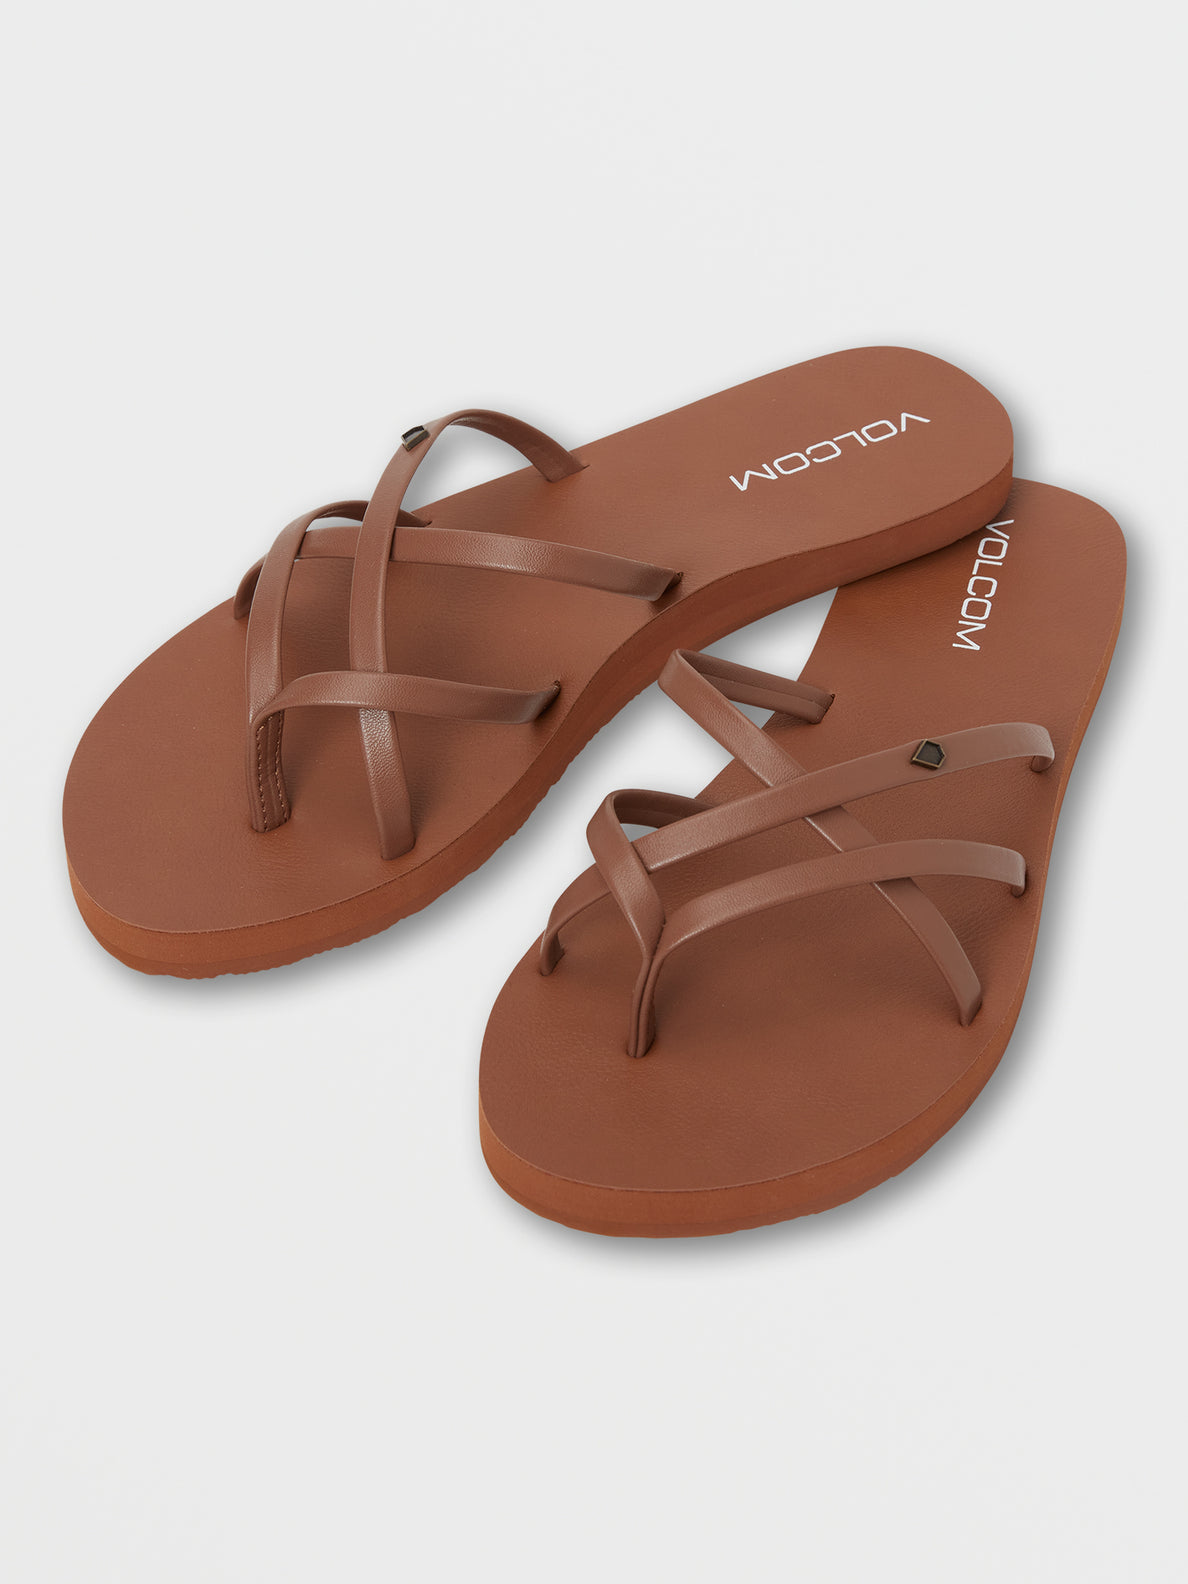 New School II Sandals - Cognac (W0812351_COG) [F]